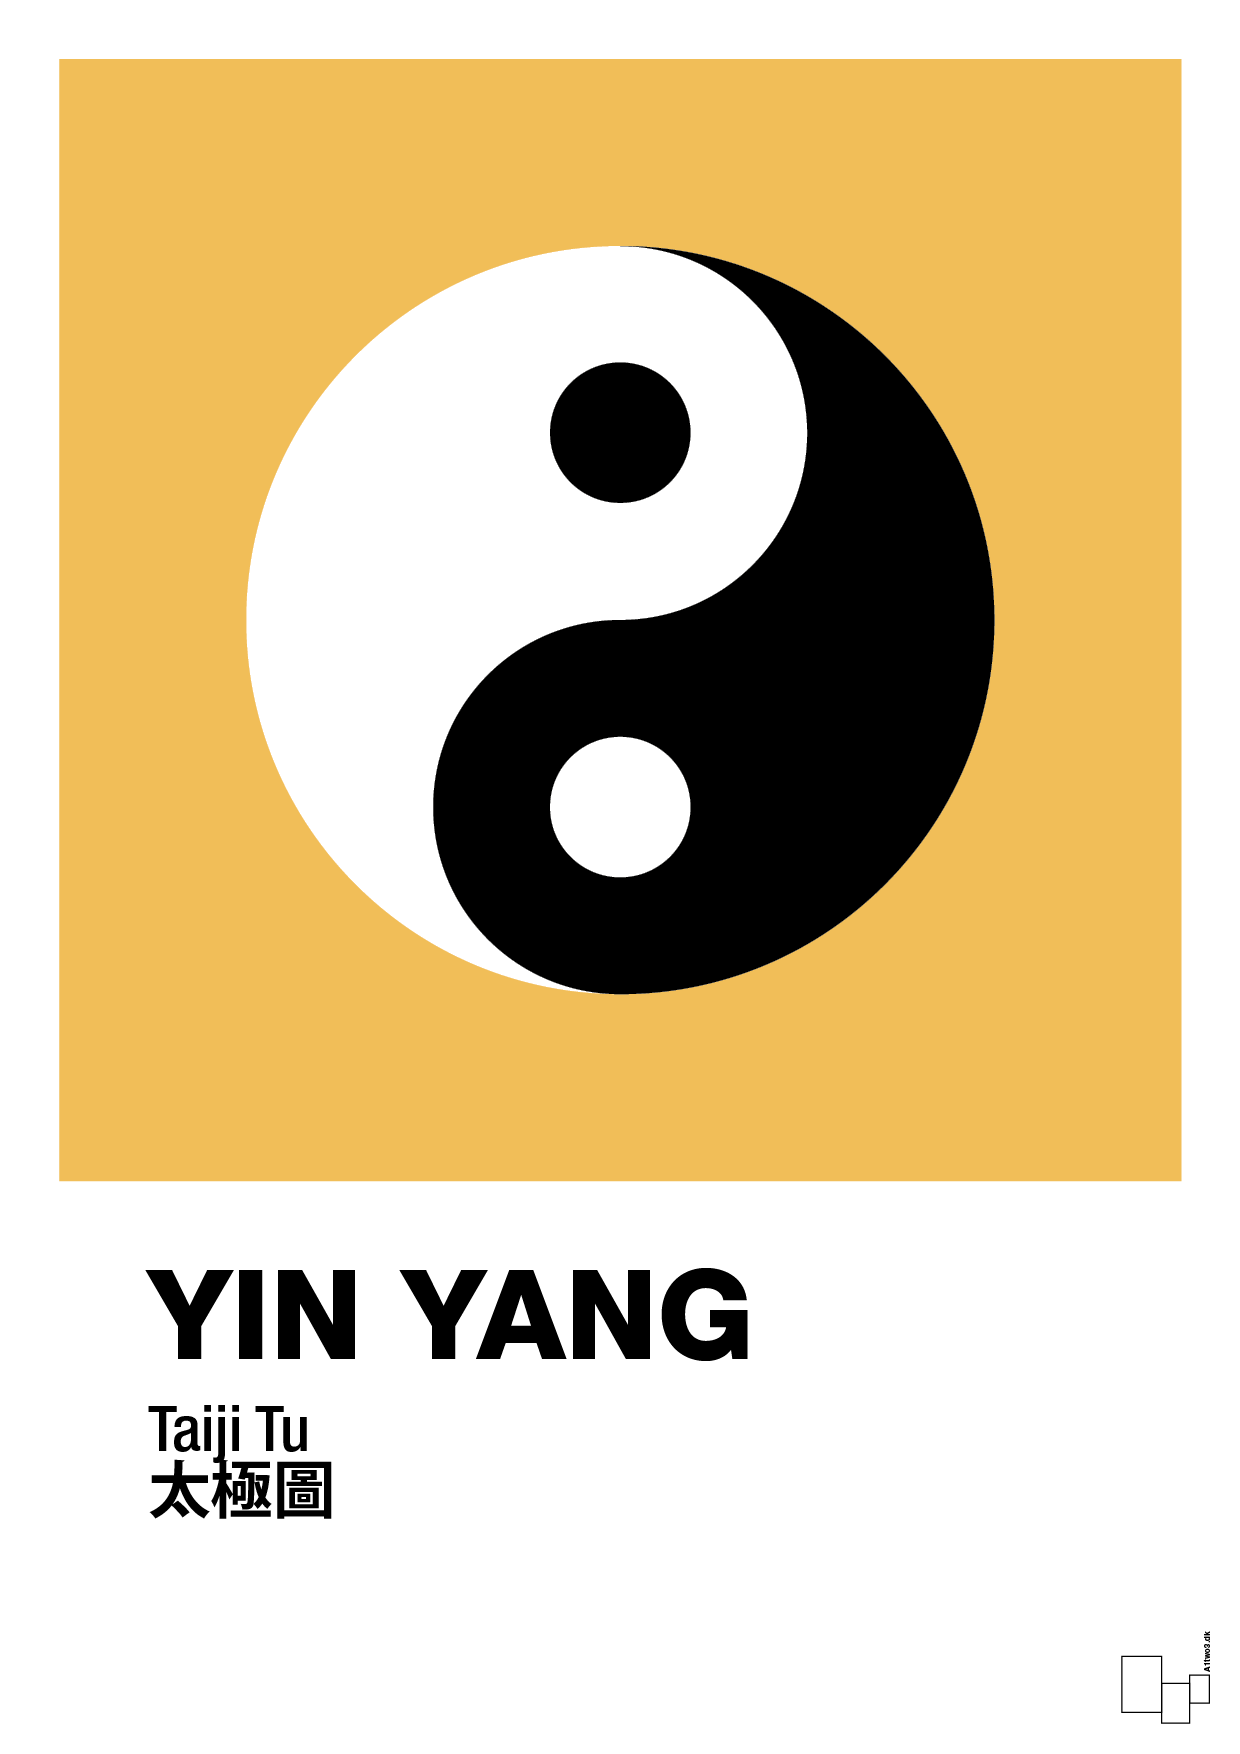 yin yang - Plakat med Videnskab i Honeycomb